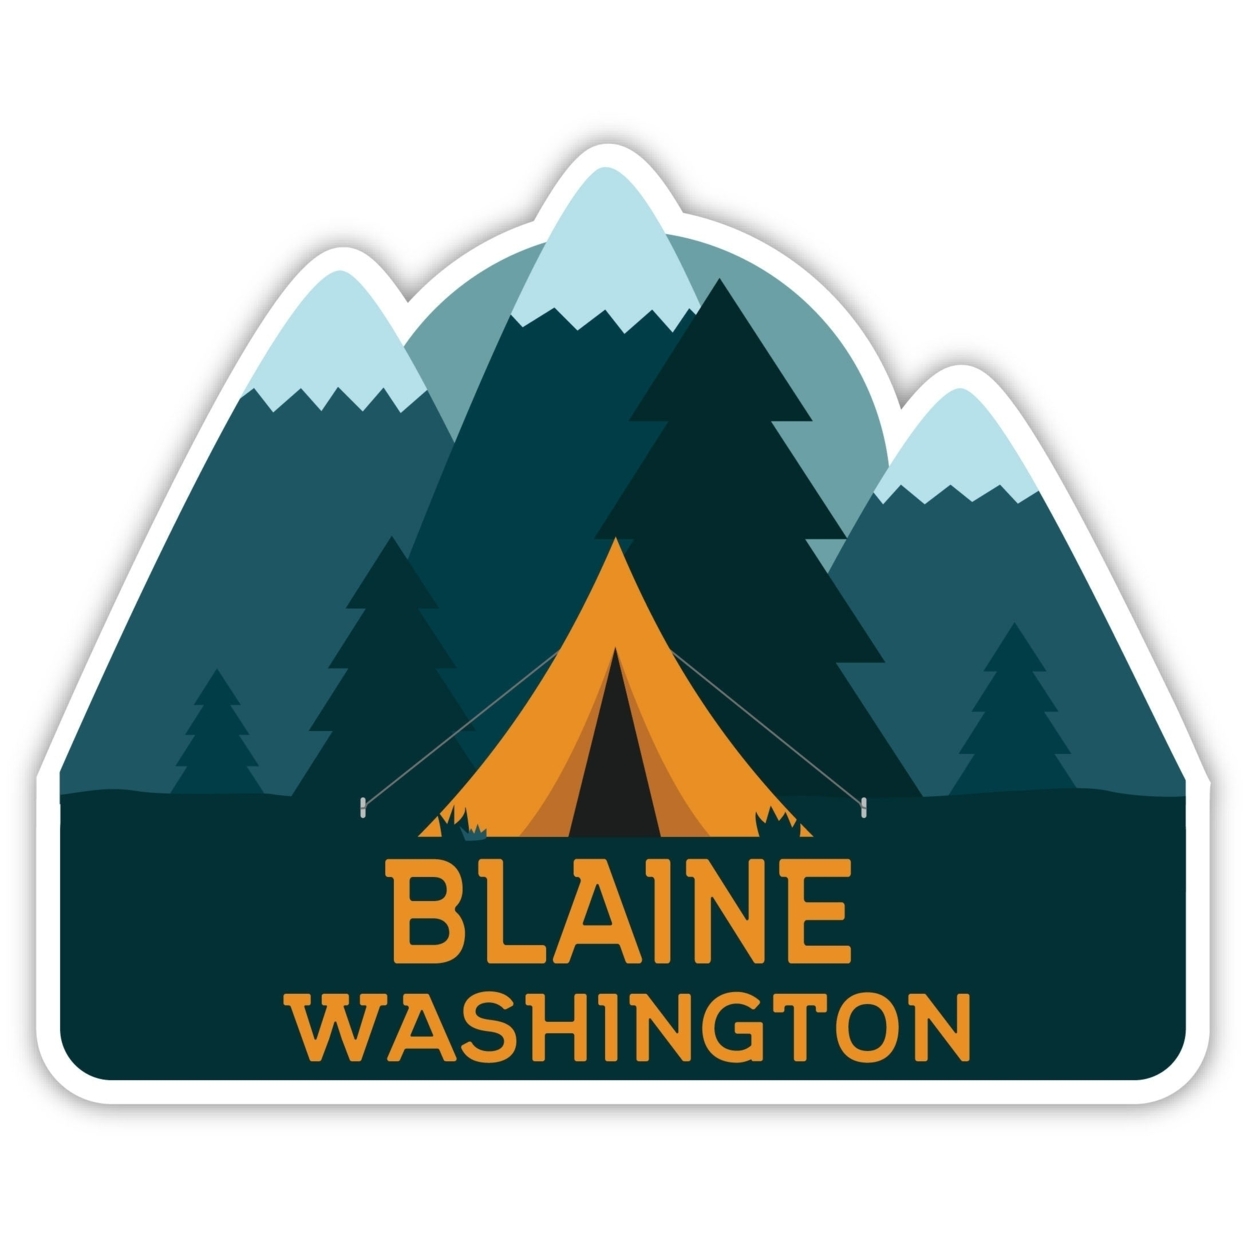 Blaine Washington Souvenir Decorative Stickers (Choose Theme And Size) - Single Unit, 4-Inch, Tent